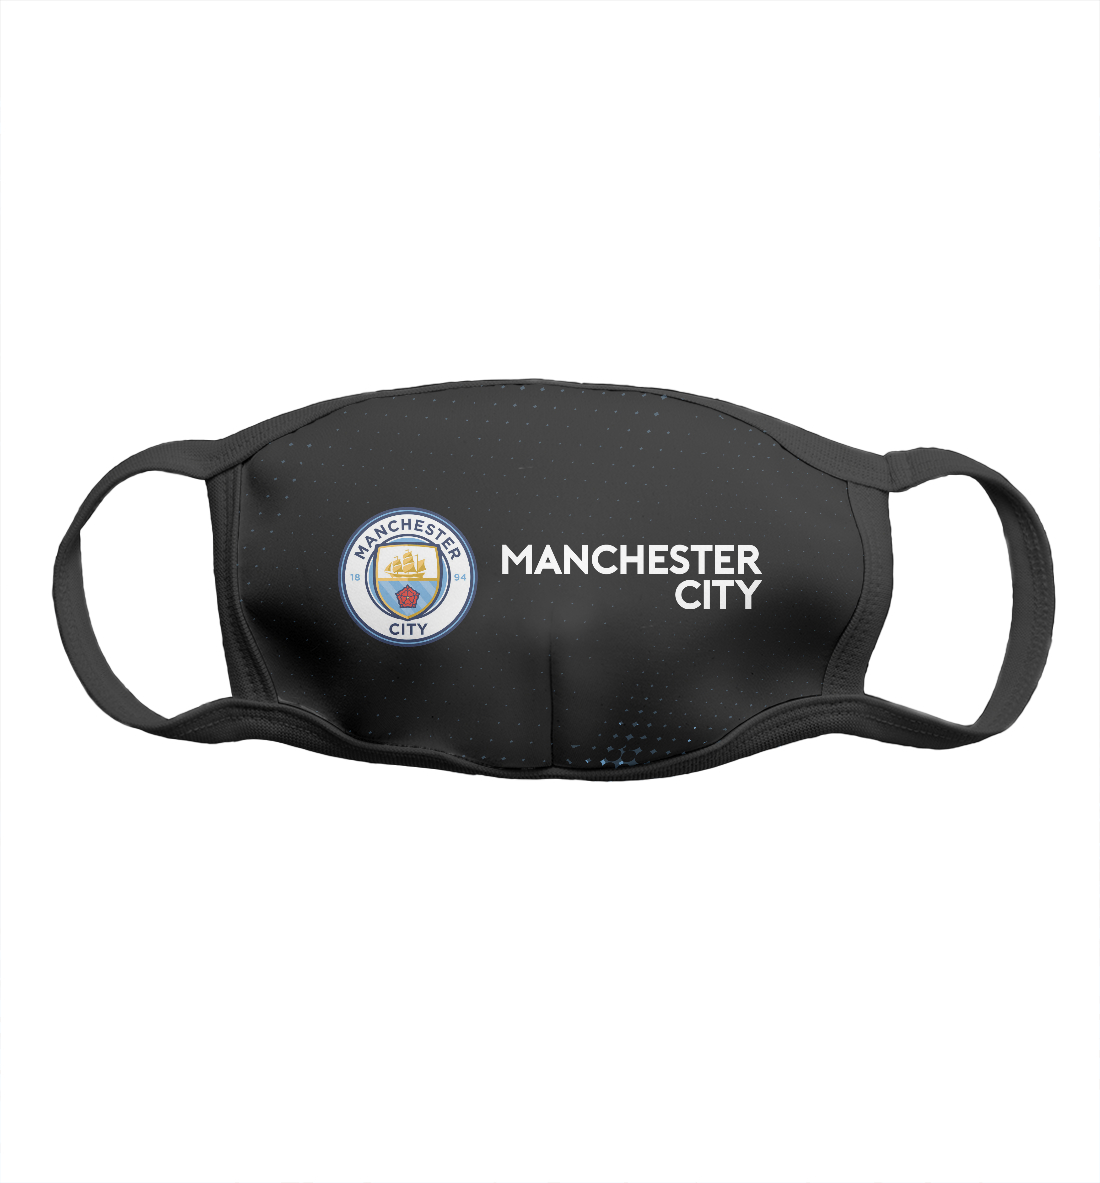 Детская Маска Manchester City для девочек, артикул MNC-534545-msk-1mp